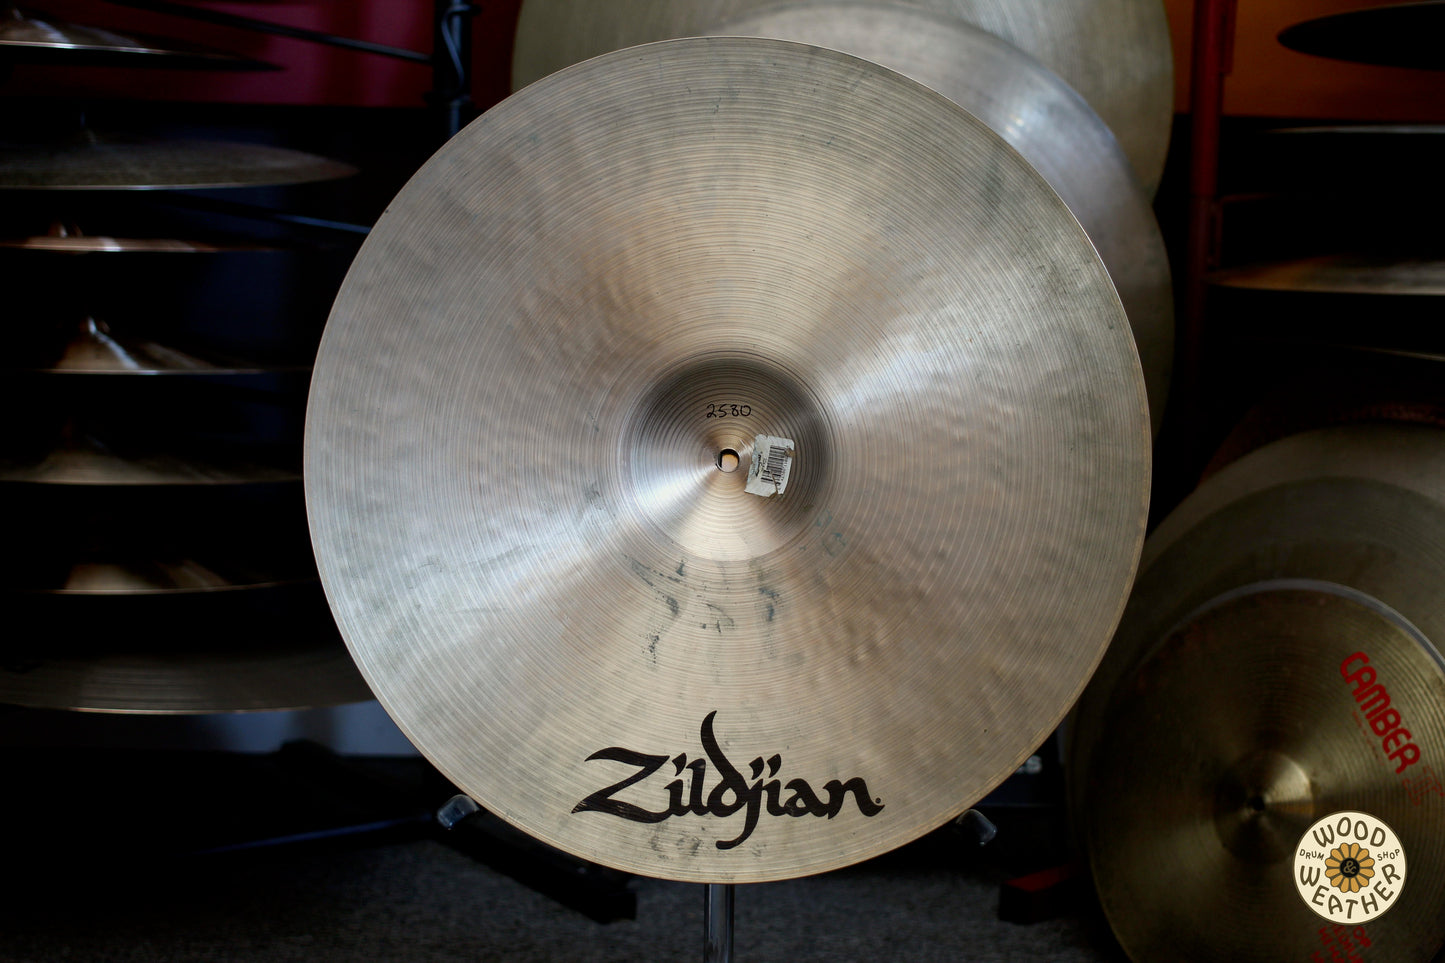 1998 Zildjian 20" K Ride Cymbal 2580g